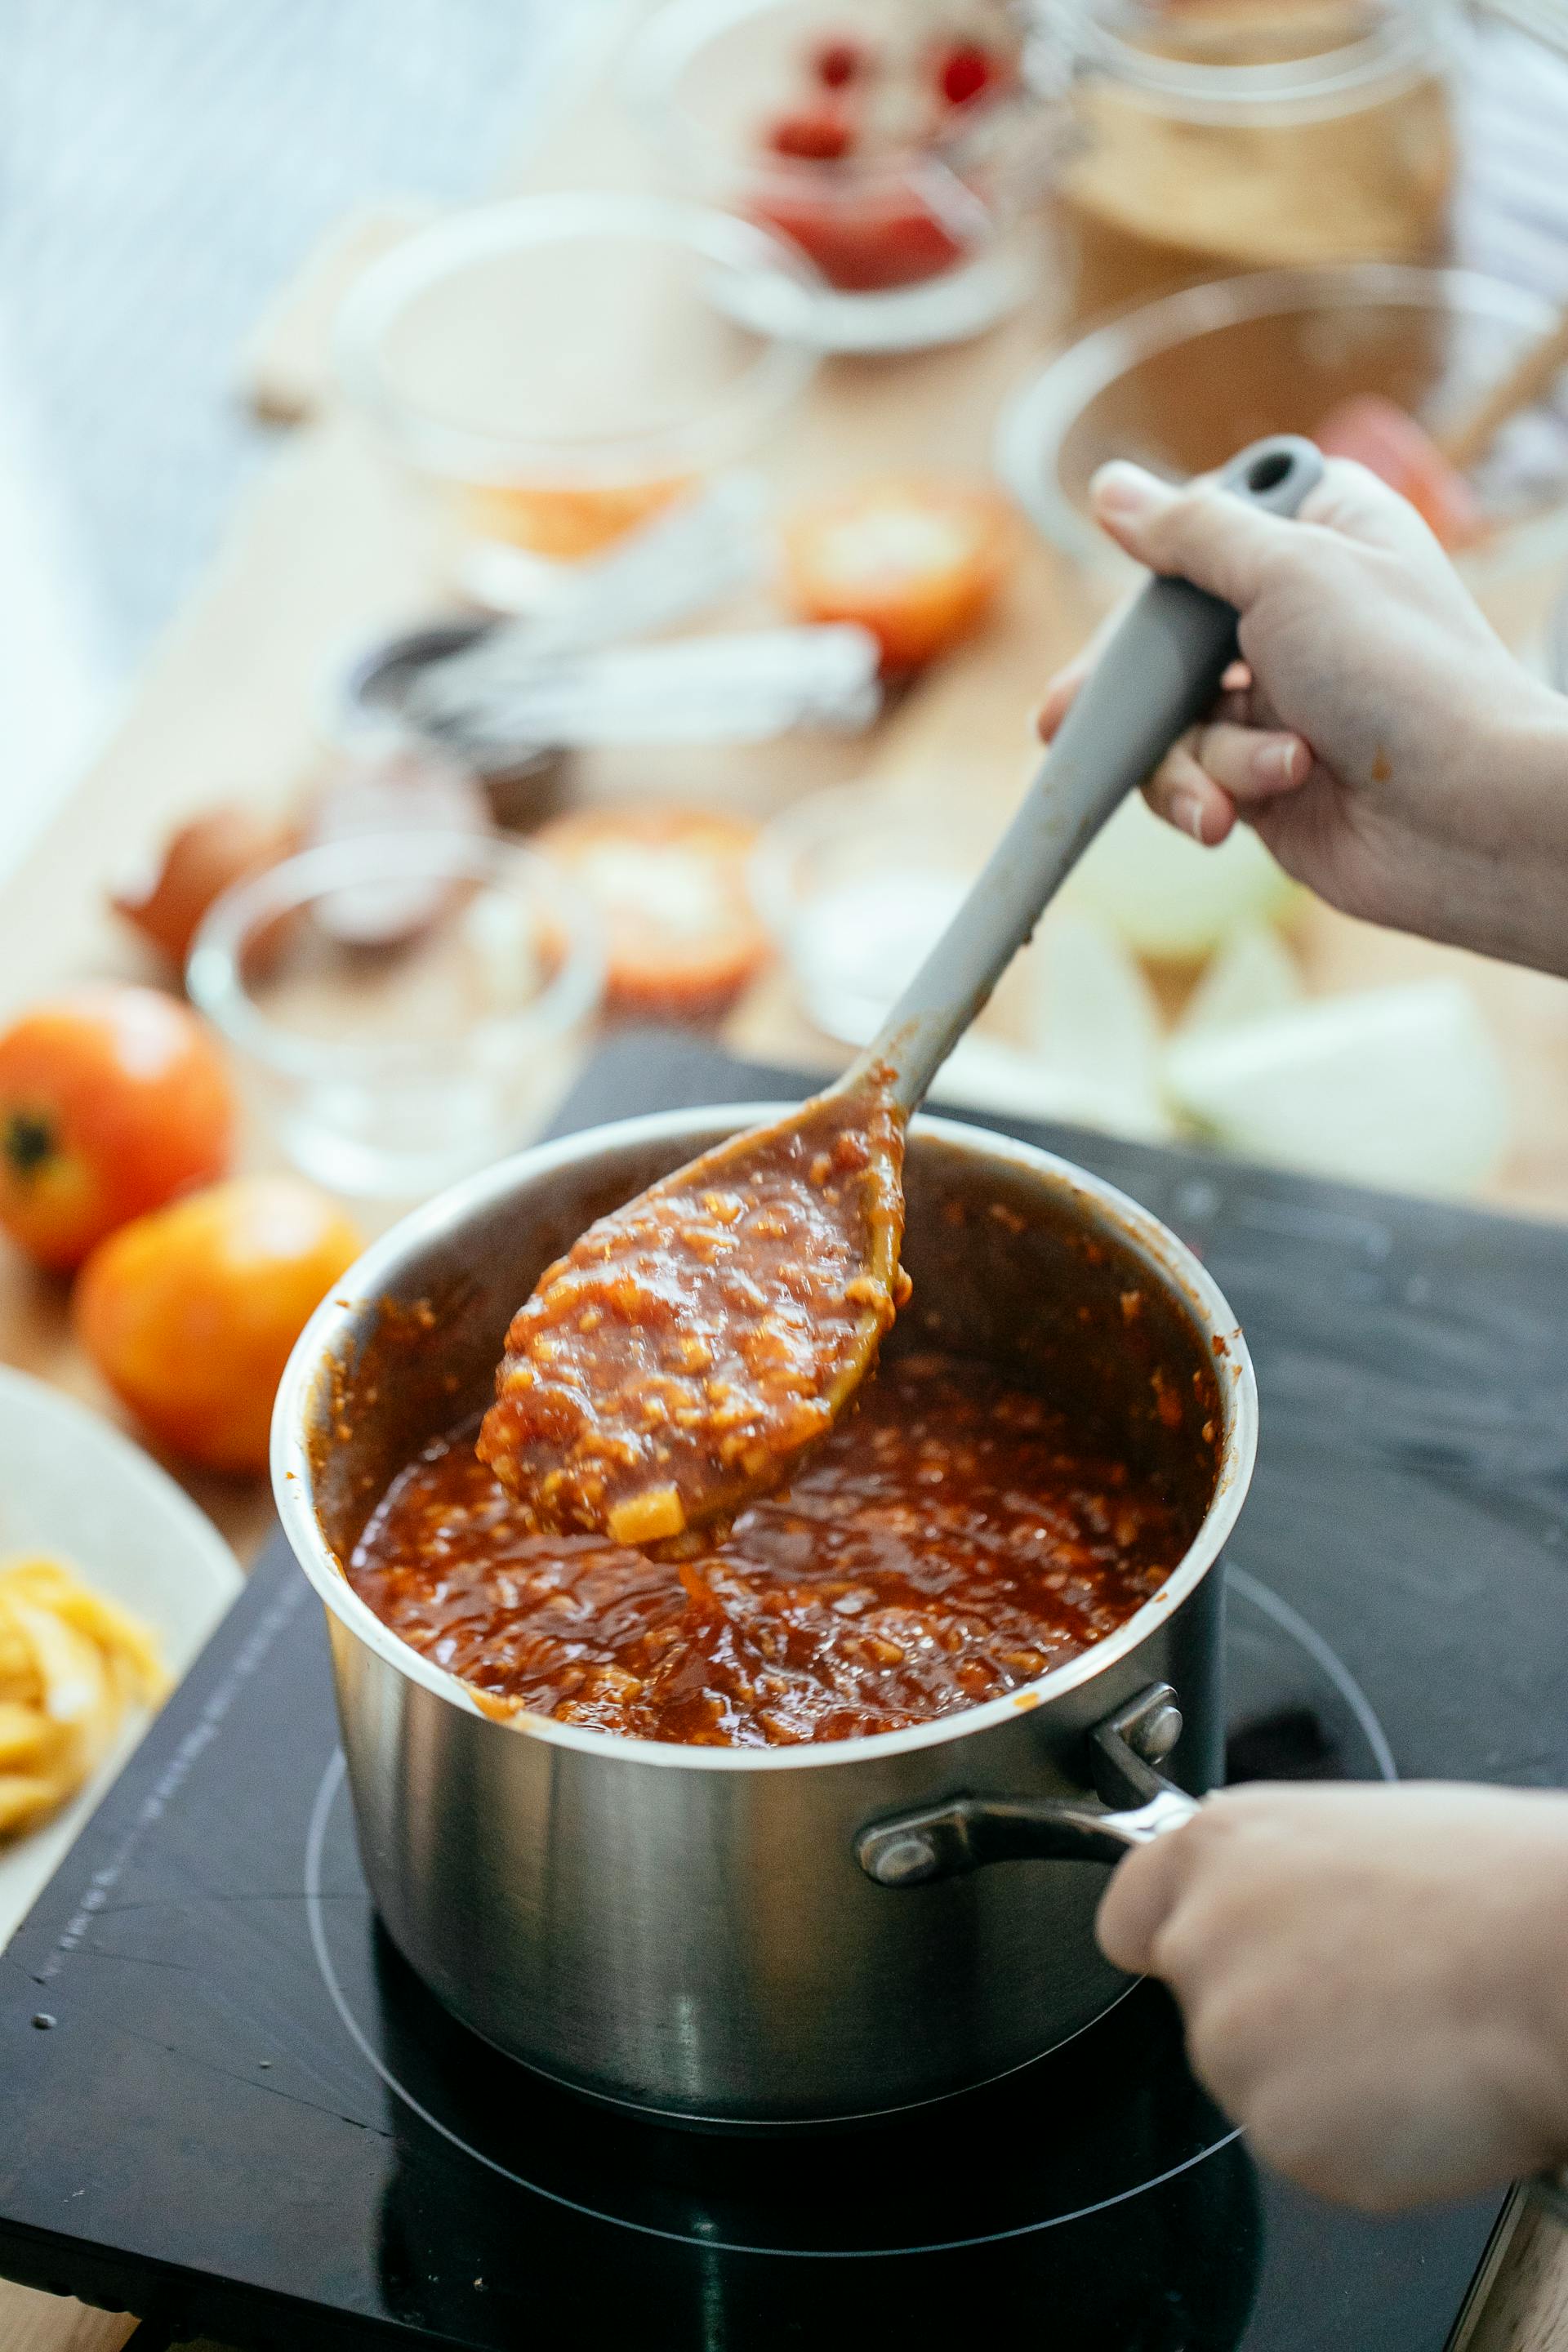 Une personne préparant des aliments dans la cuisine | Source : Pexels